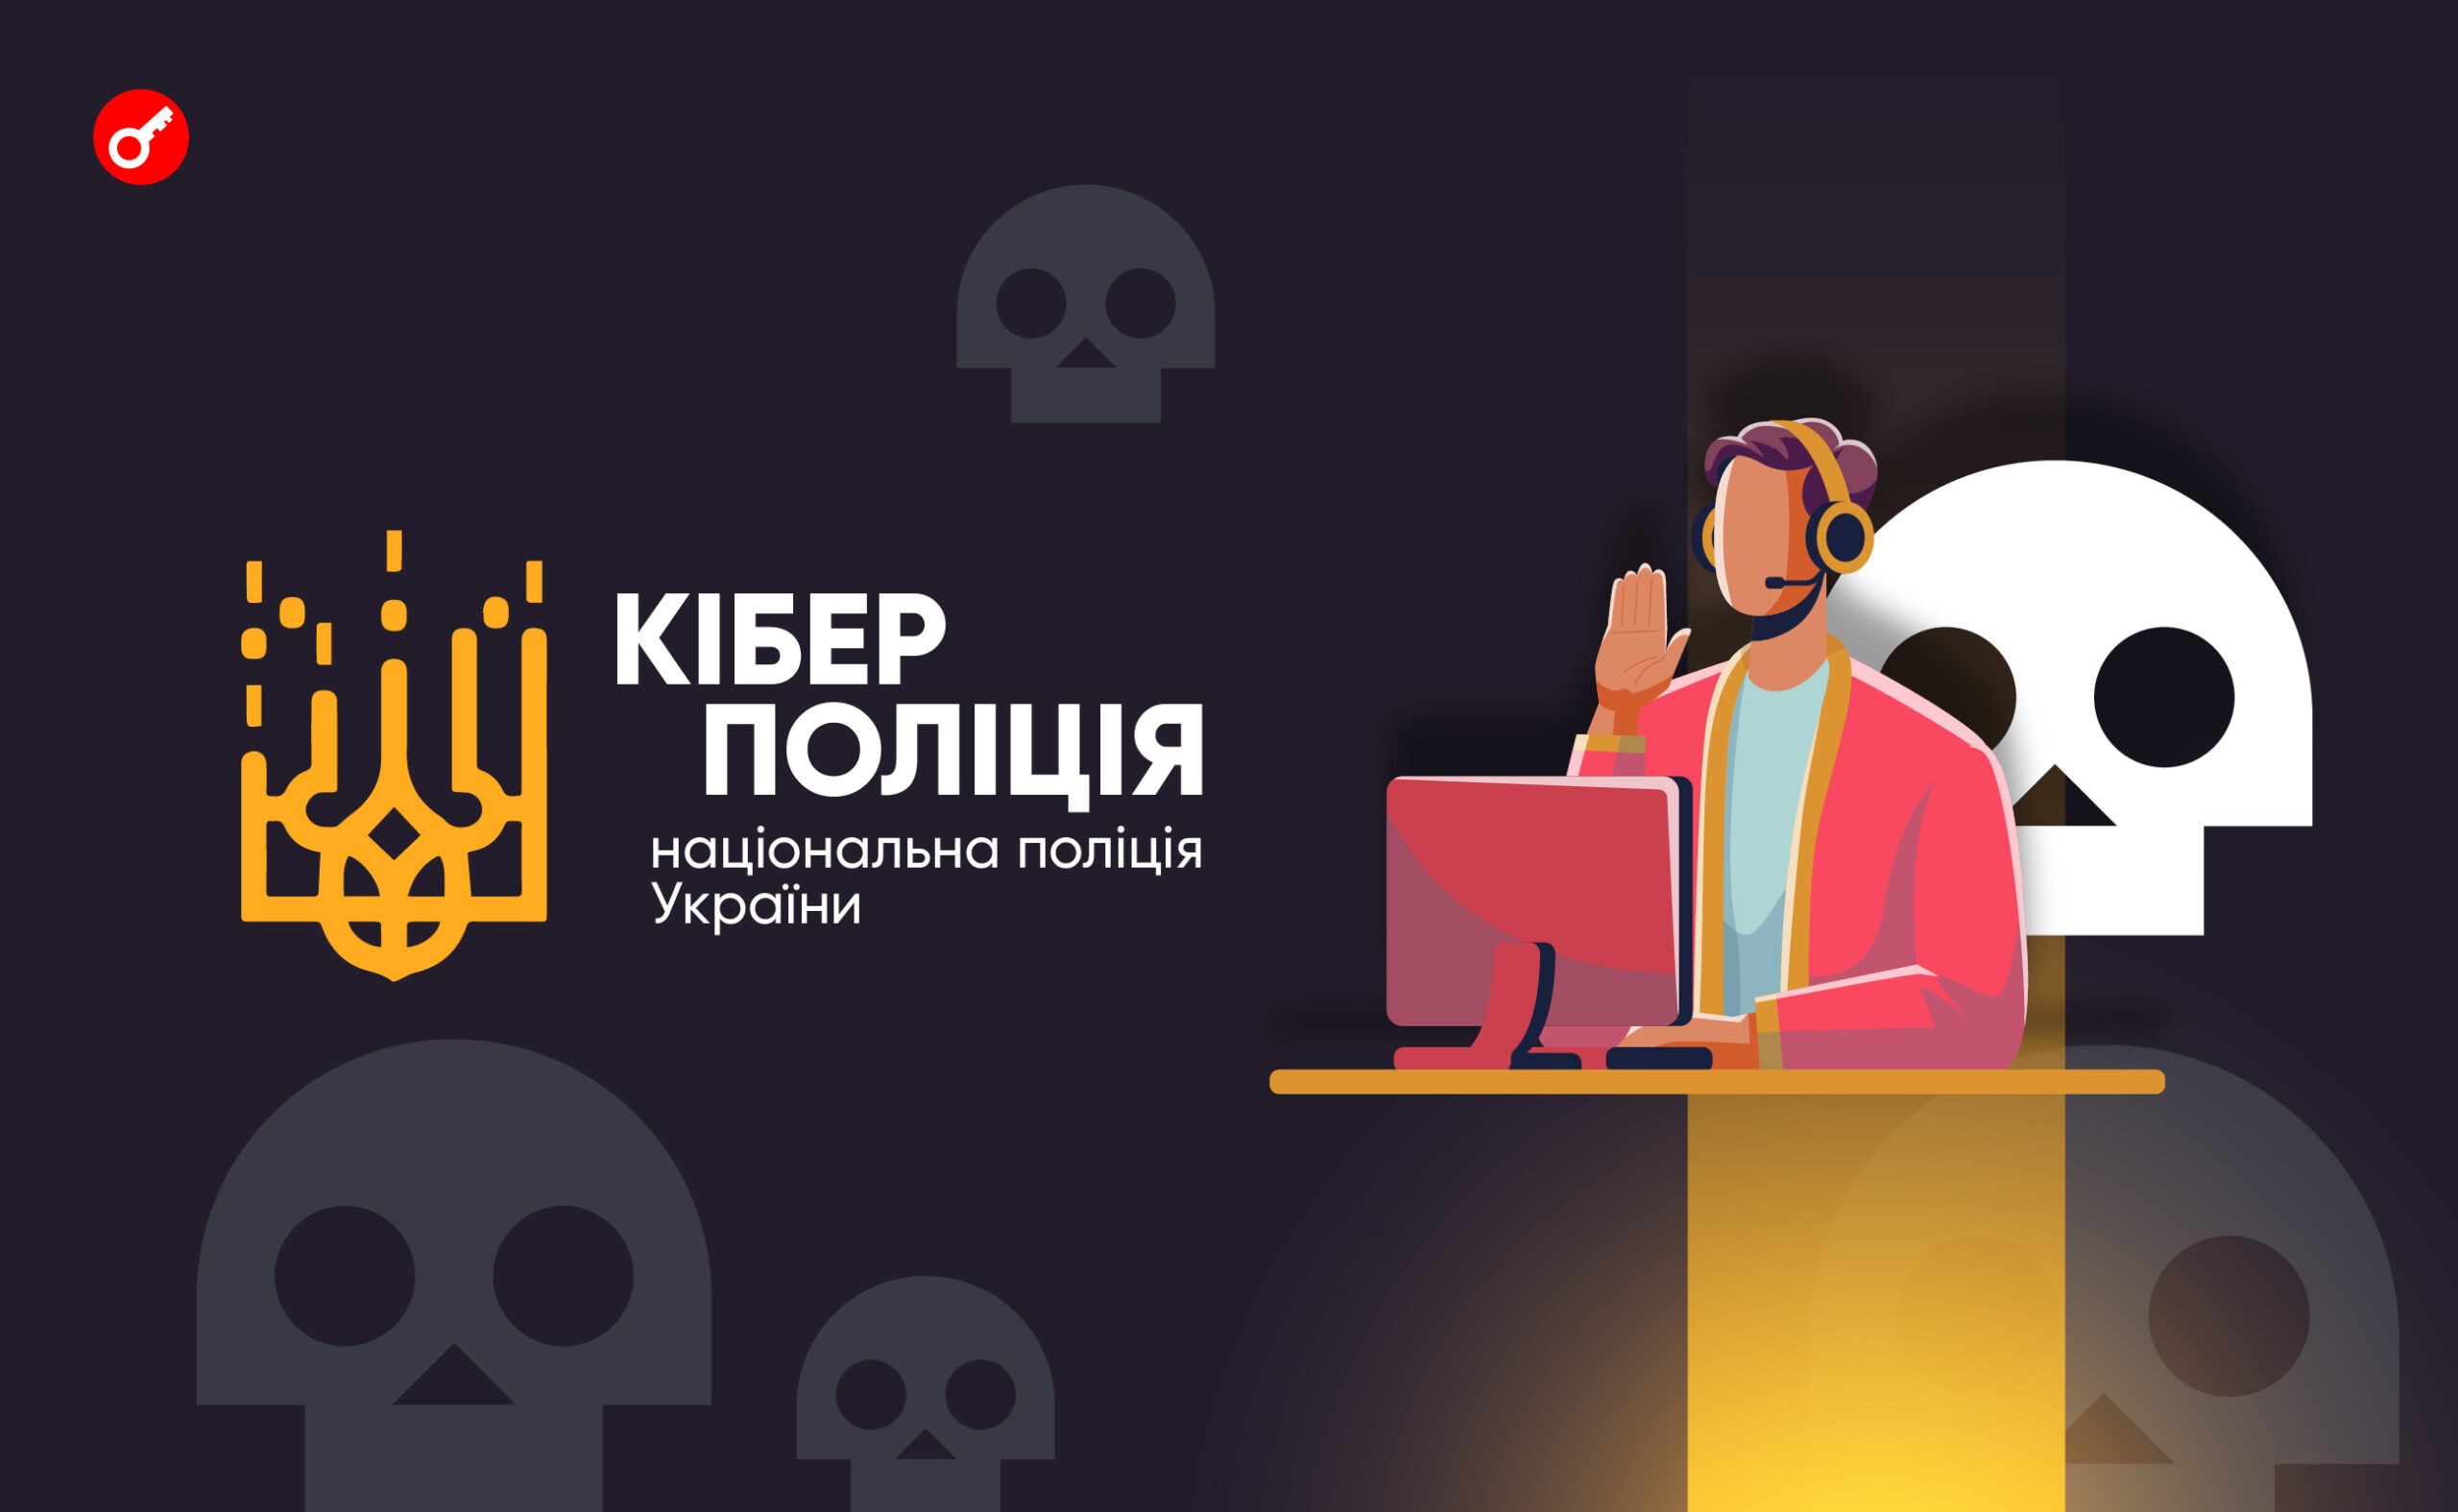 В Украине разоблачили группу хакеров и конфисковали у них криптовалюты. Заглавный коллаж новости.